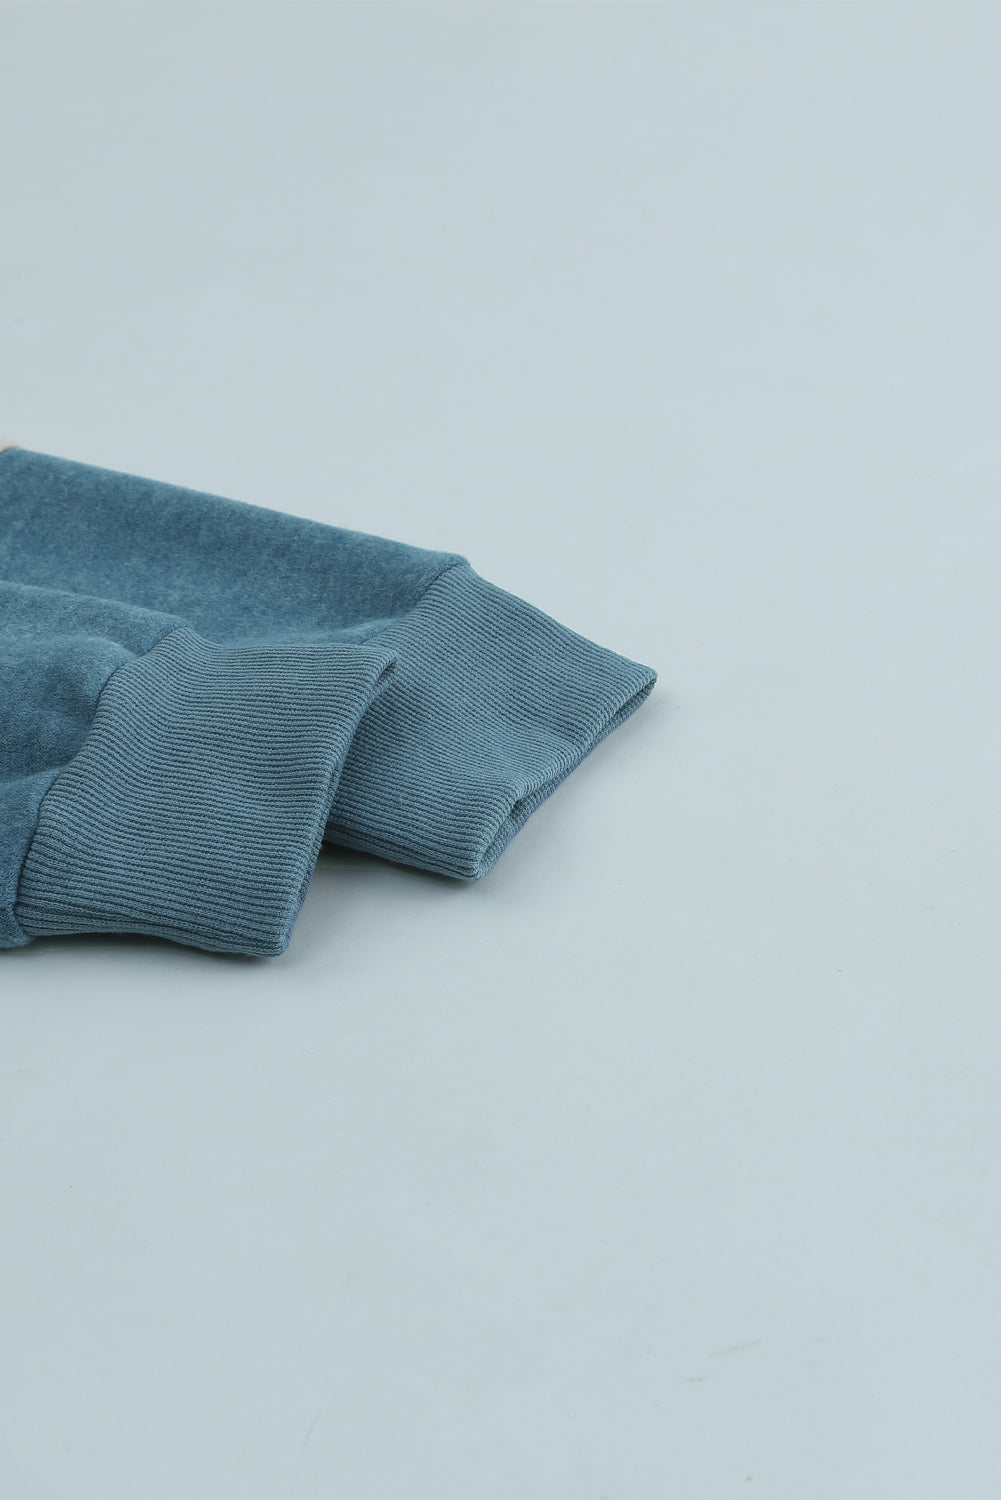 Sweat-shirt bleu à manches longues et blocs de couleurs